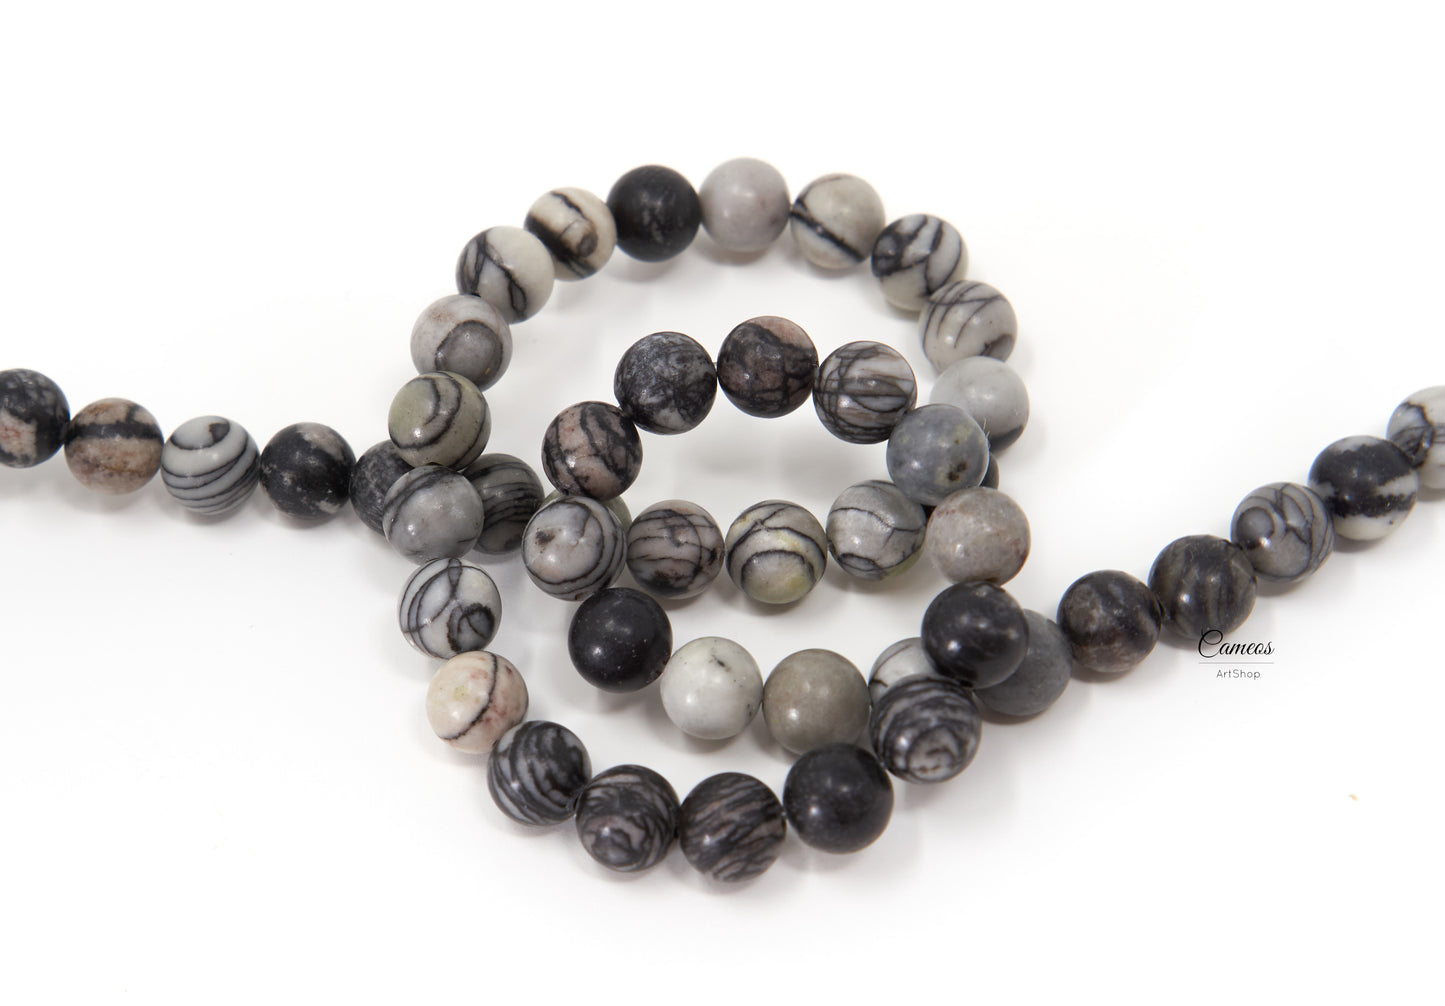 Black Silk Netstone Beads, 8mm Black and White Beads, Natural Gemstone Beads, 10 pcs